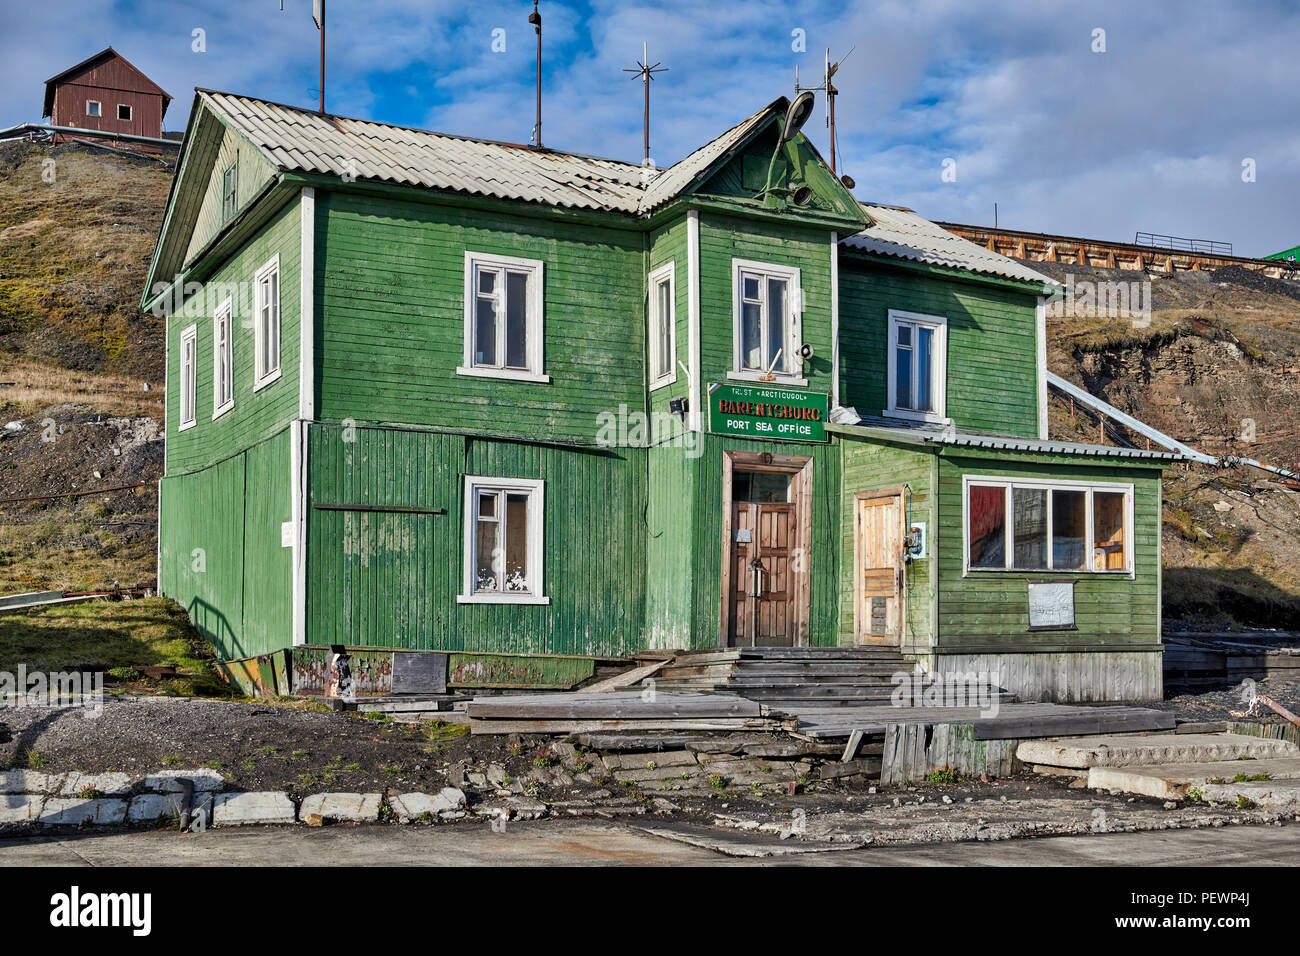 Bâtiments en bois typique de la vieille ville minière russe de Barentsburg Svalbard, Spitzberg, ou l'Europe Banque D'Images